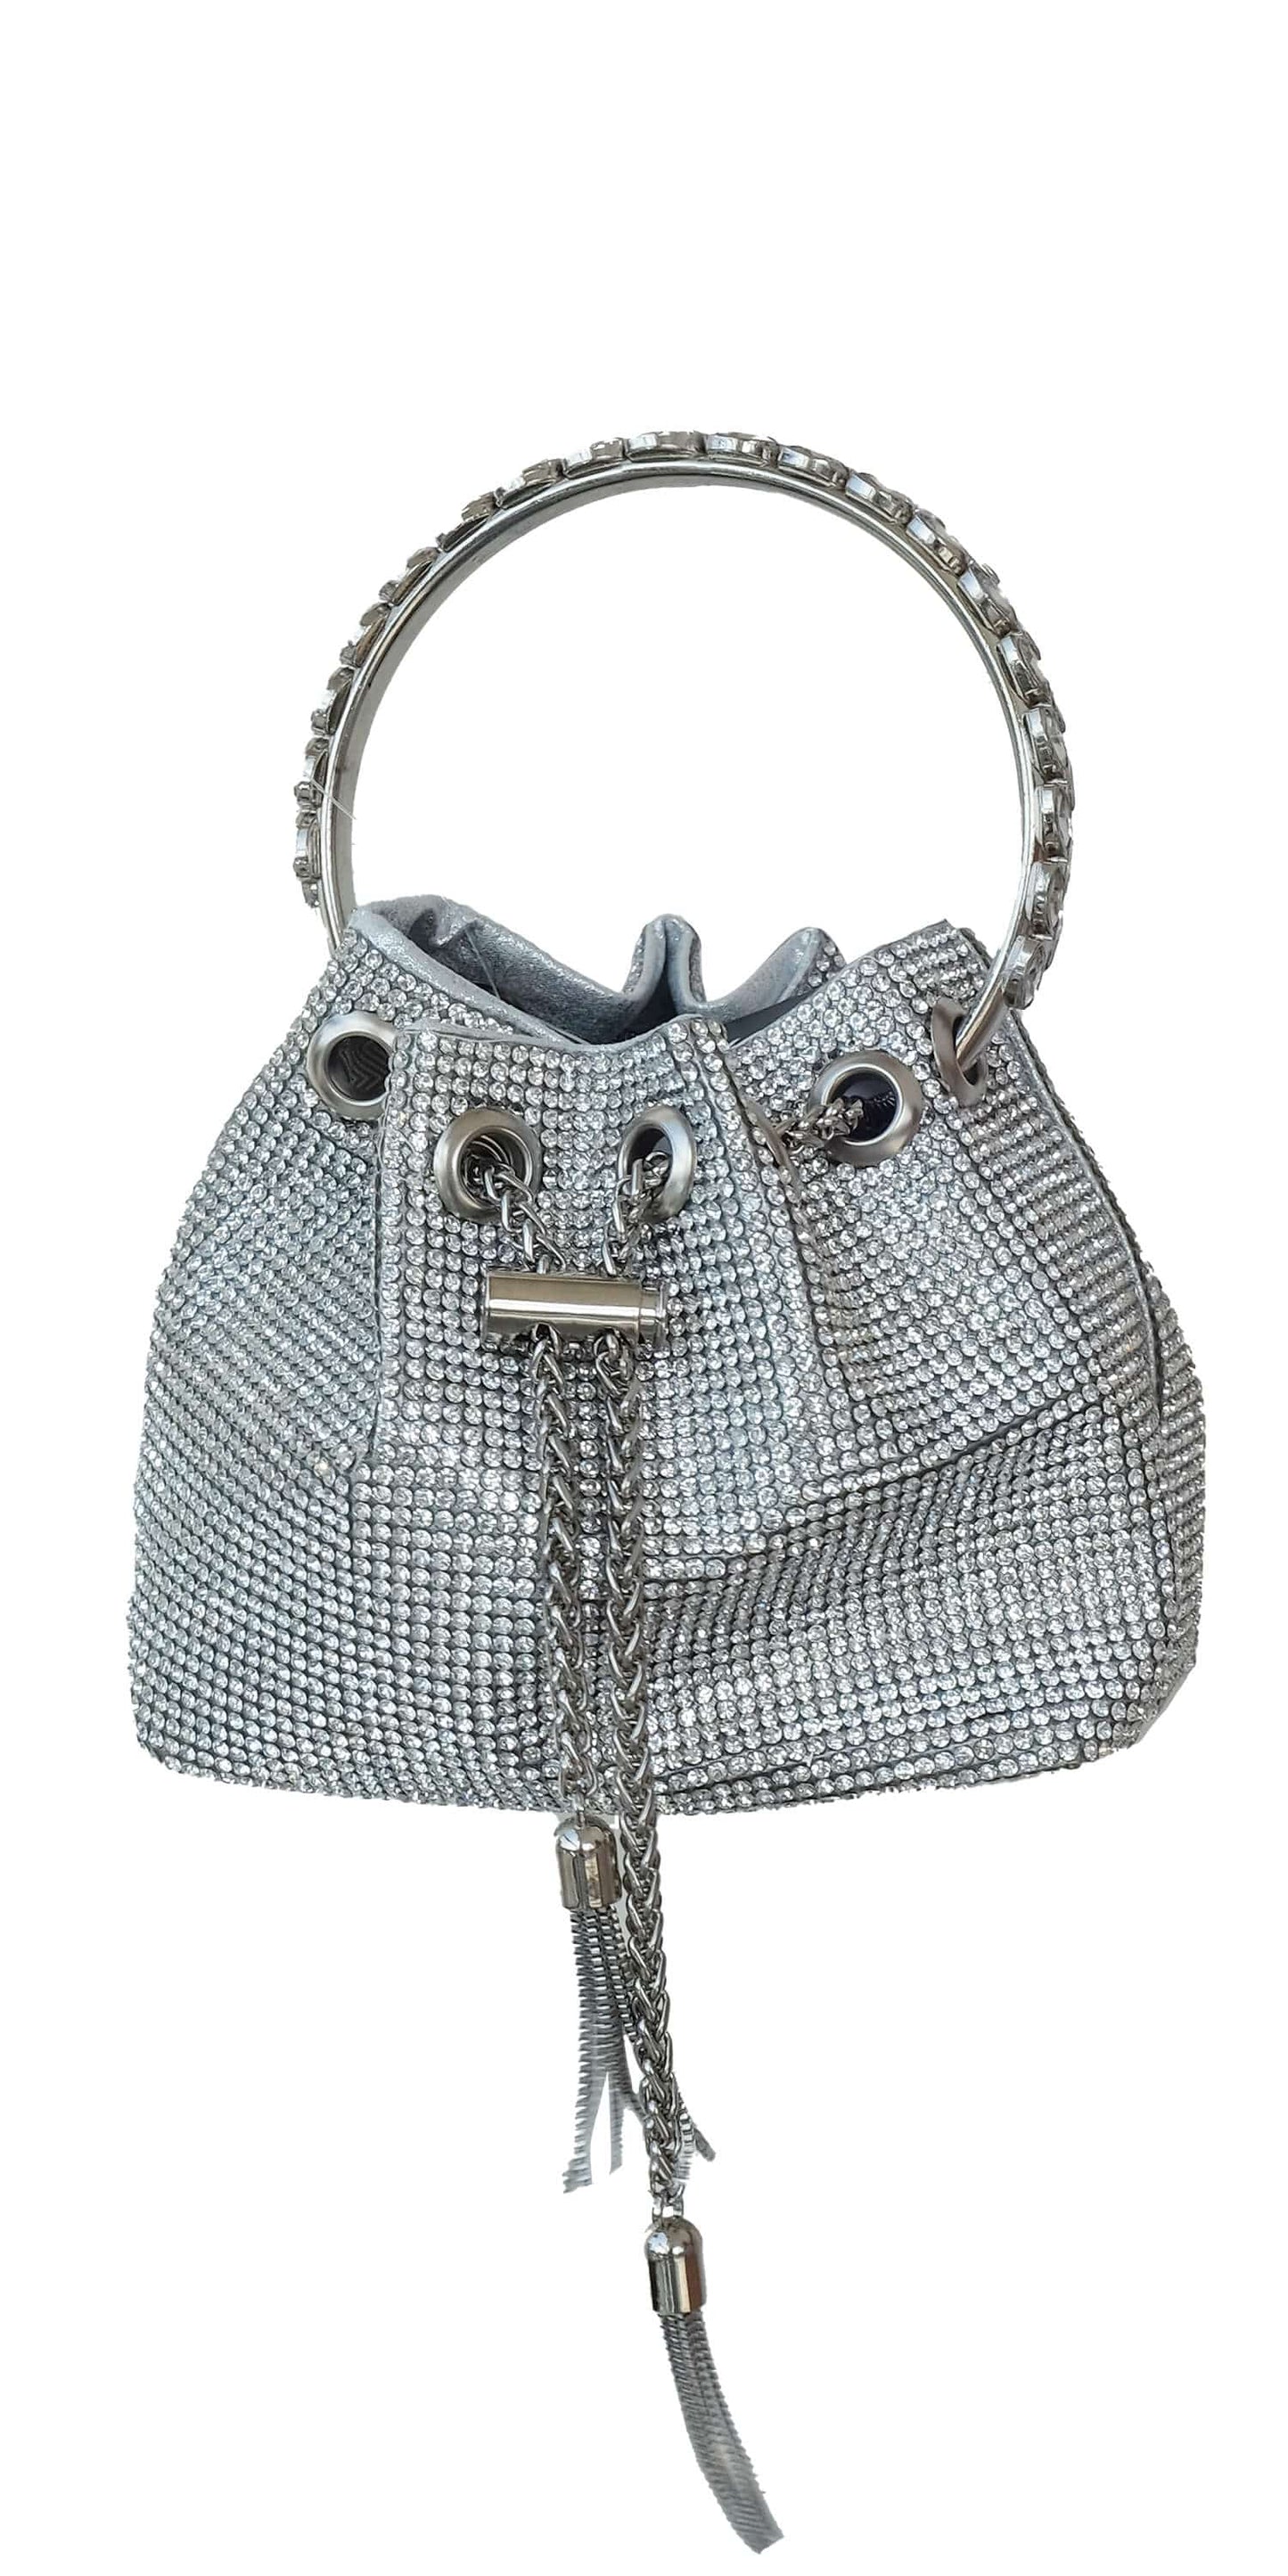 Camille La Vie Rhinestone Drawstring Bucket Handbag with Metal Handle OS / silver